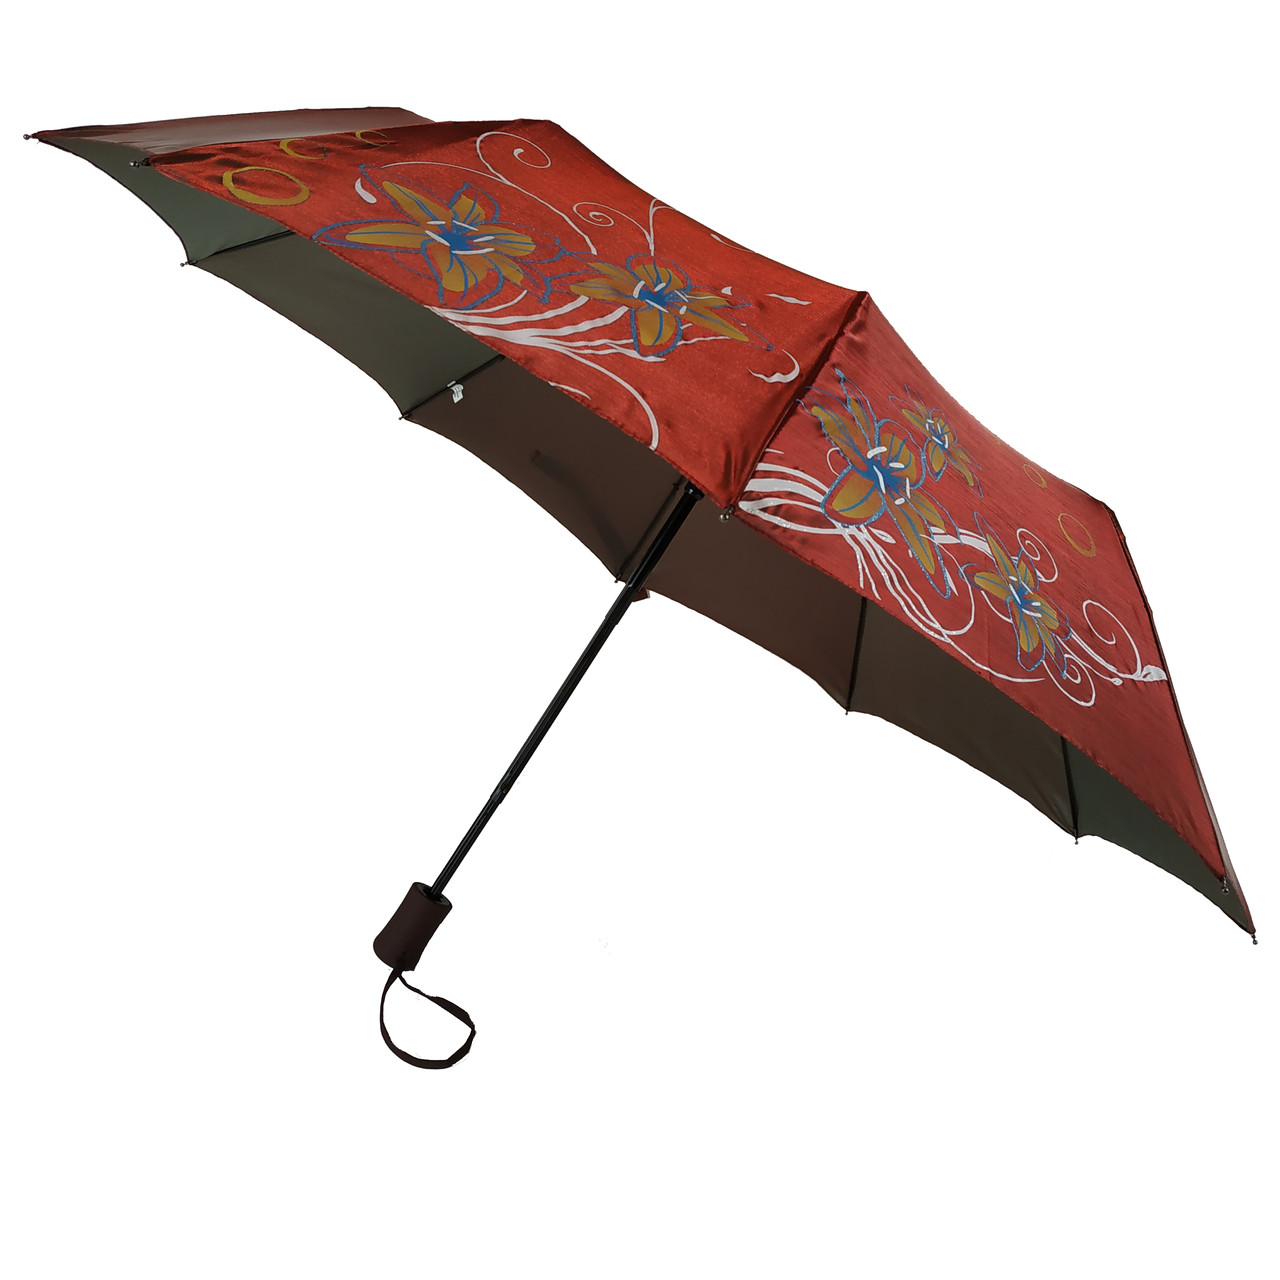 Жіноча парасолька напівавтомат Bellissimo на 10 спиць із квітковим візерунком, вишнева, 02018-5, фото 1